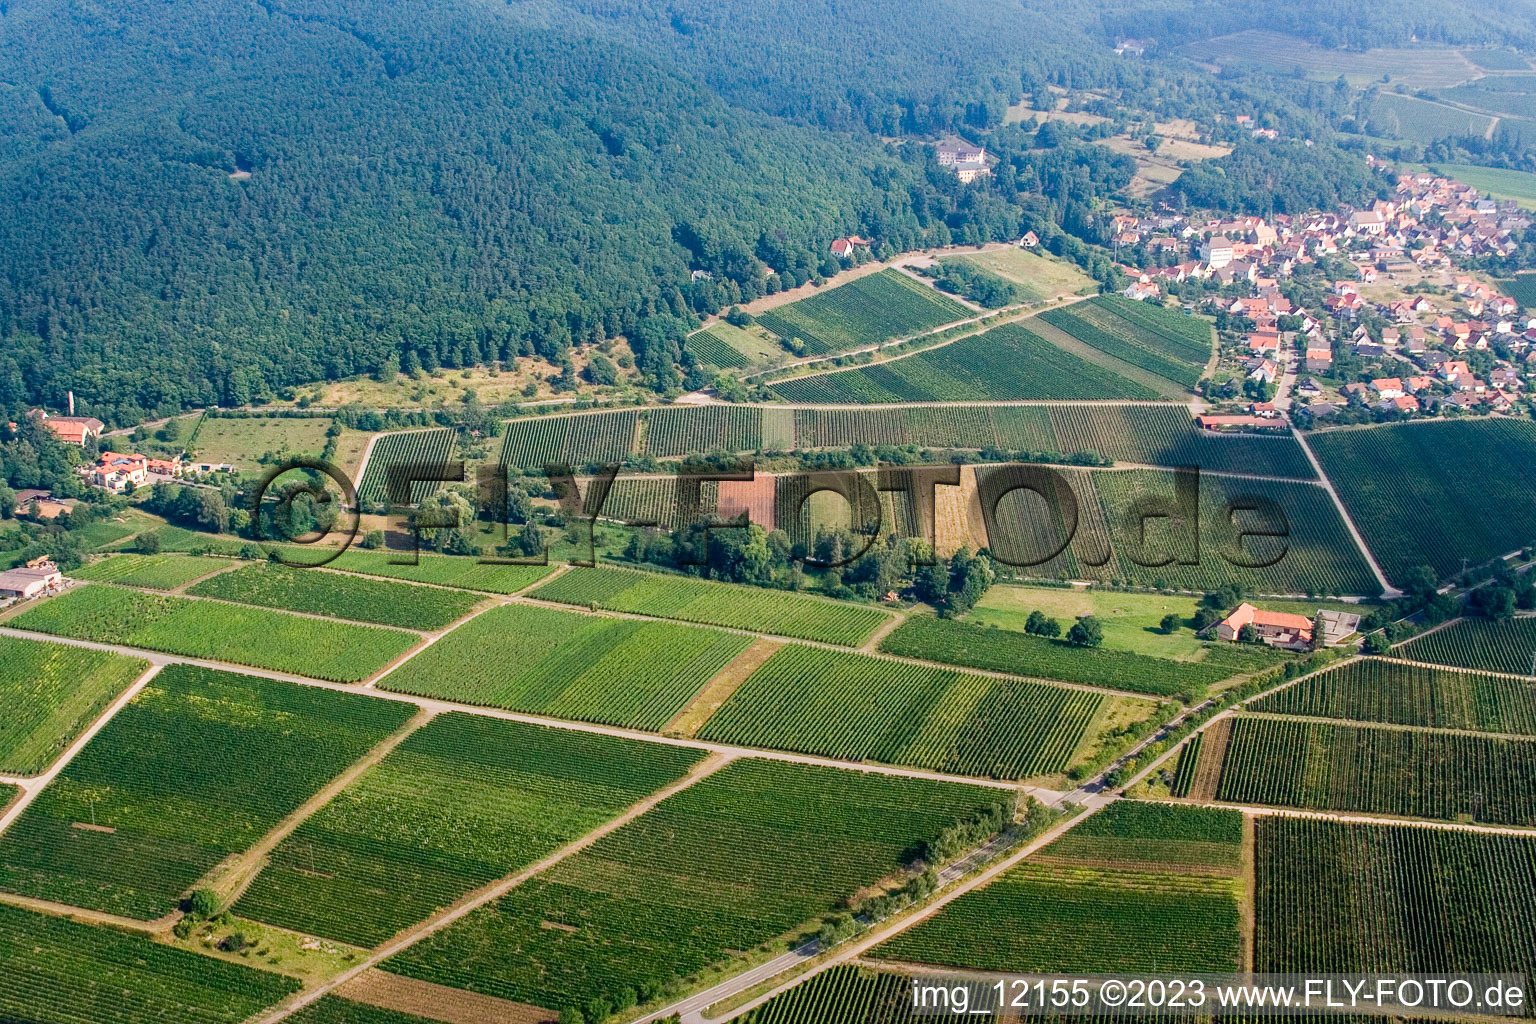 Gleisweiler im Bundesland Rheinland-Pfalz, Deutschland aus der Luft betrachtet